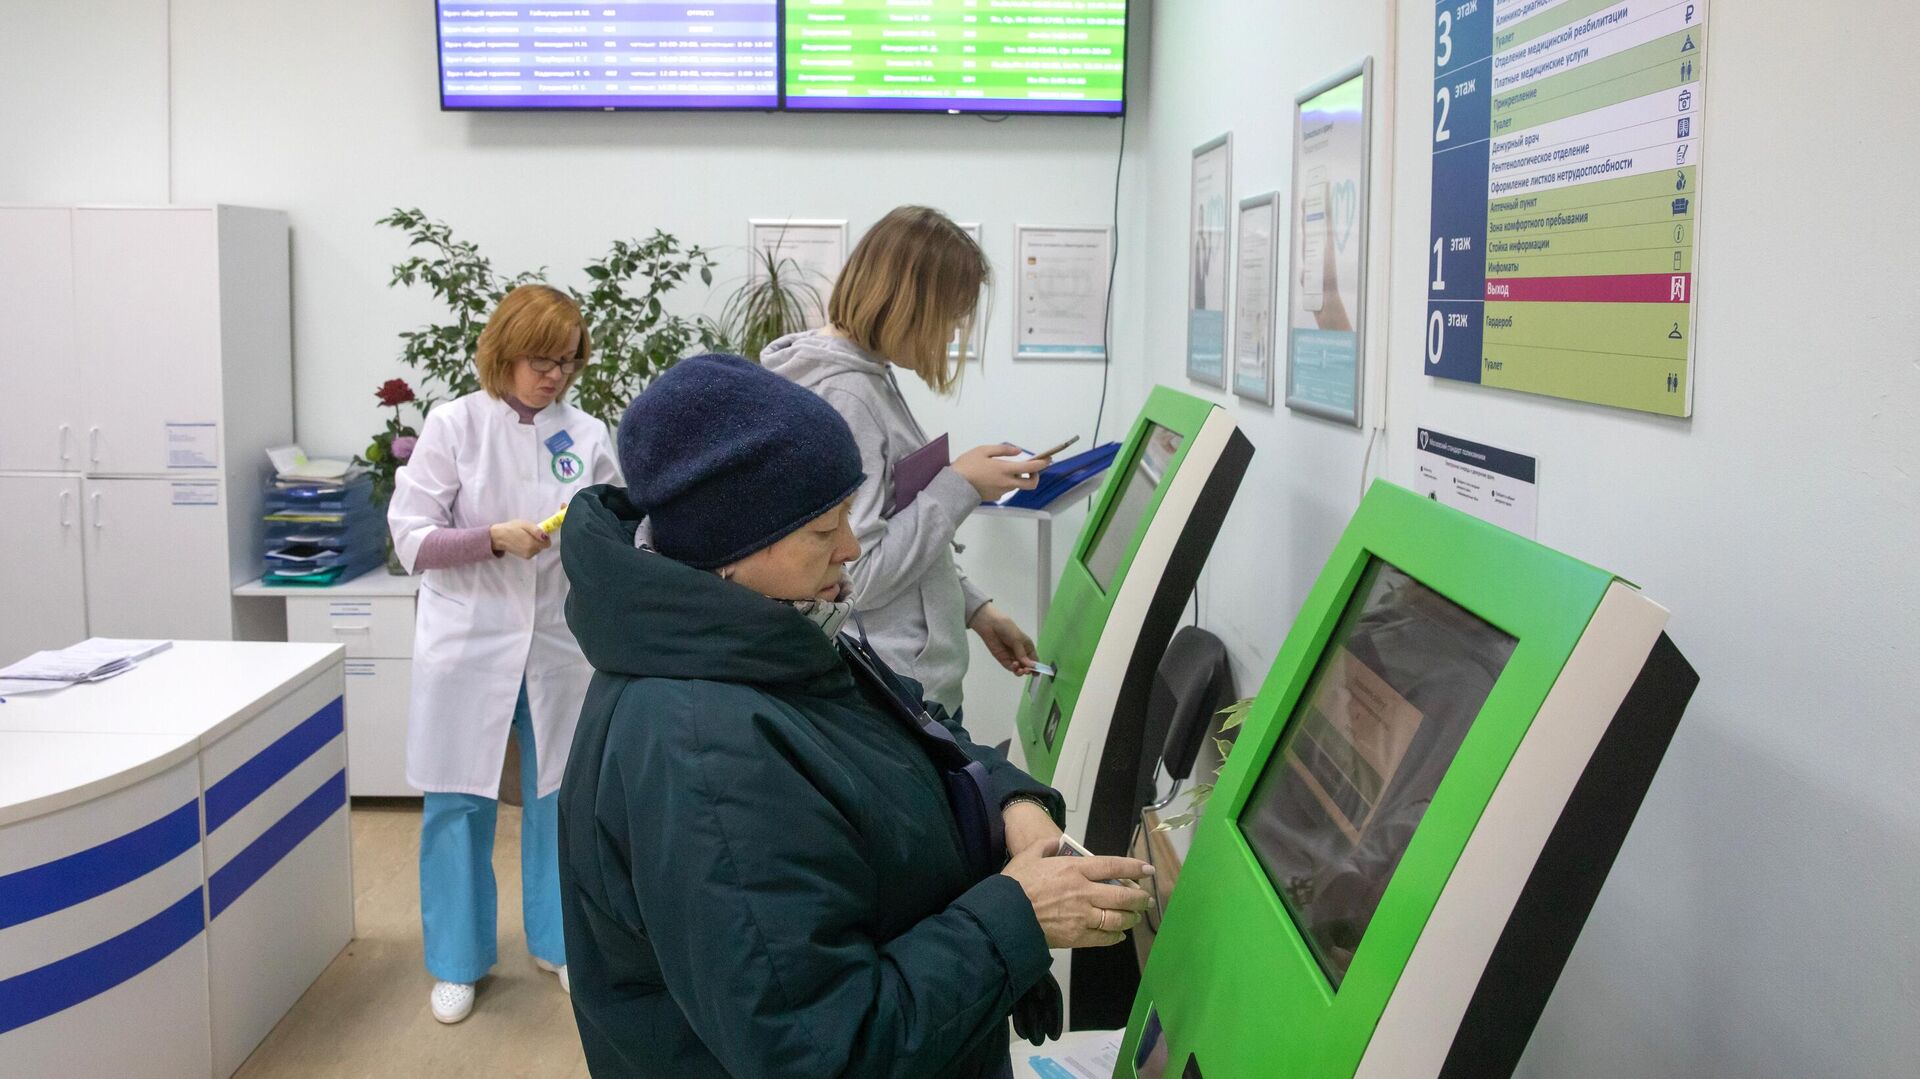  Пациенты записываются на прием к врачу через электронные терминалы в Москве   - РИА Новости, 1920, 08.10.2021